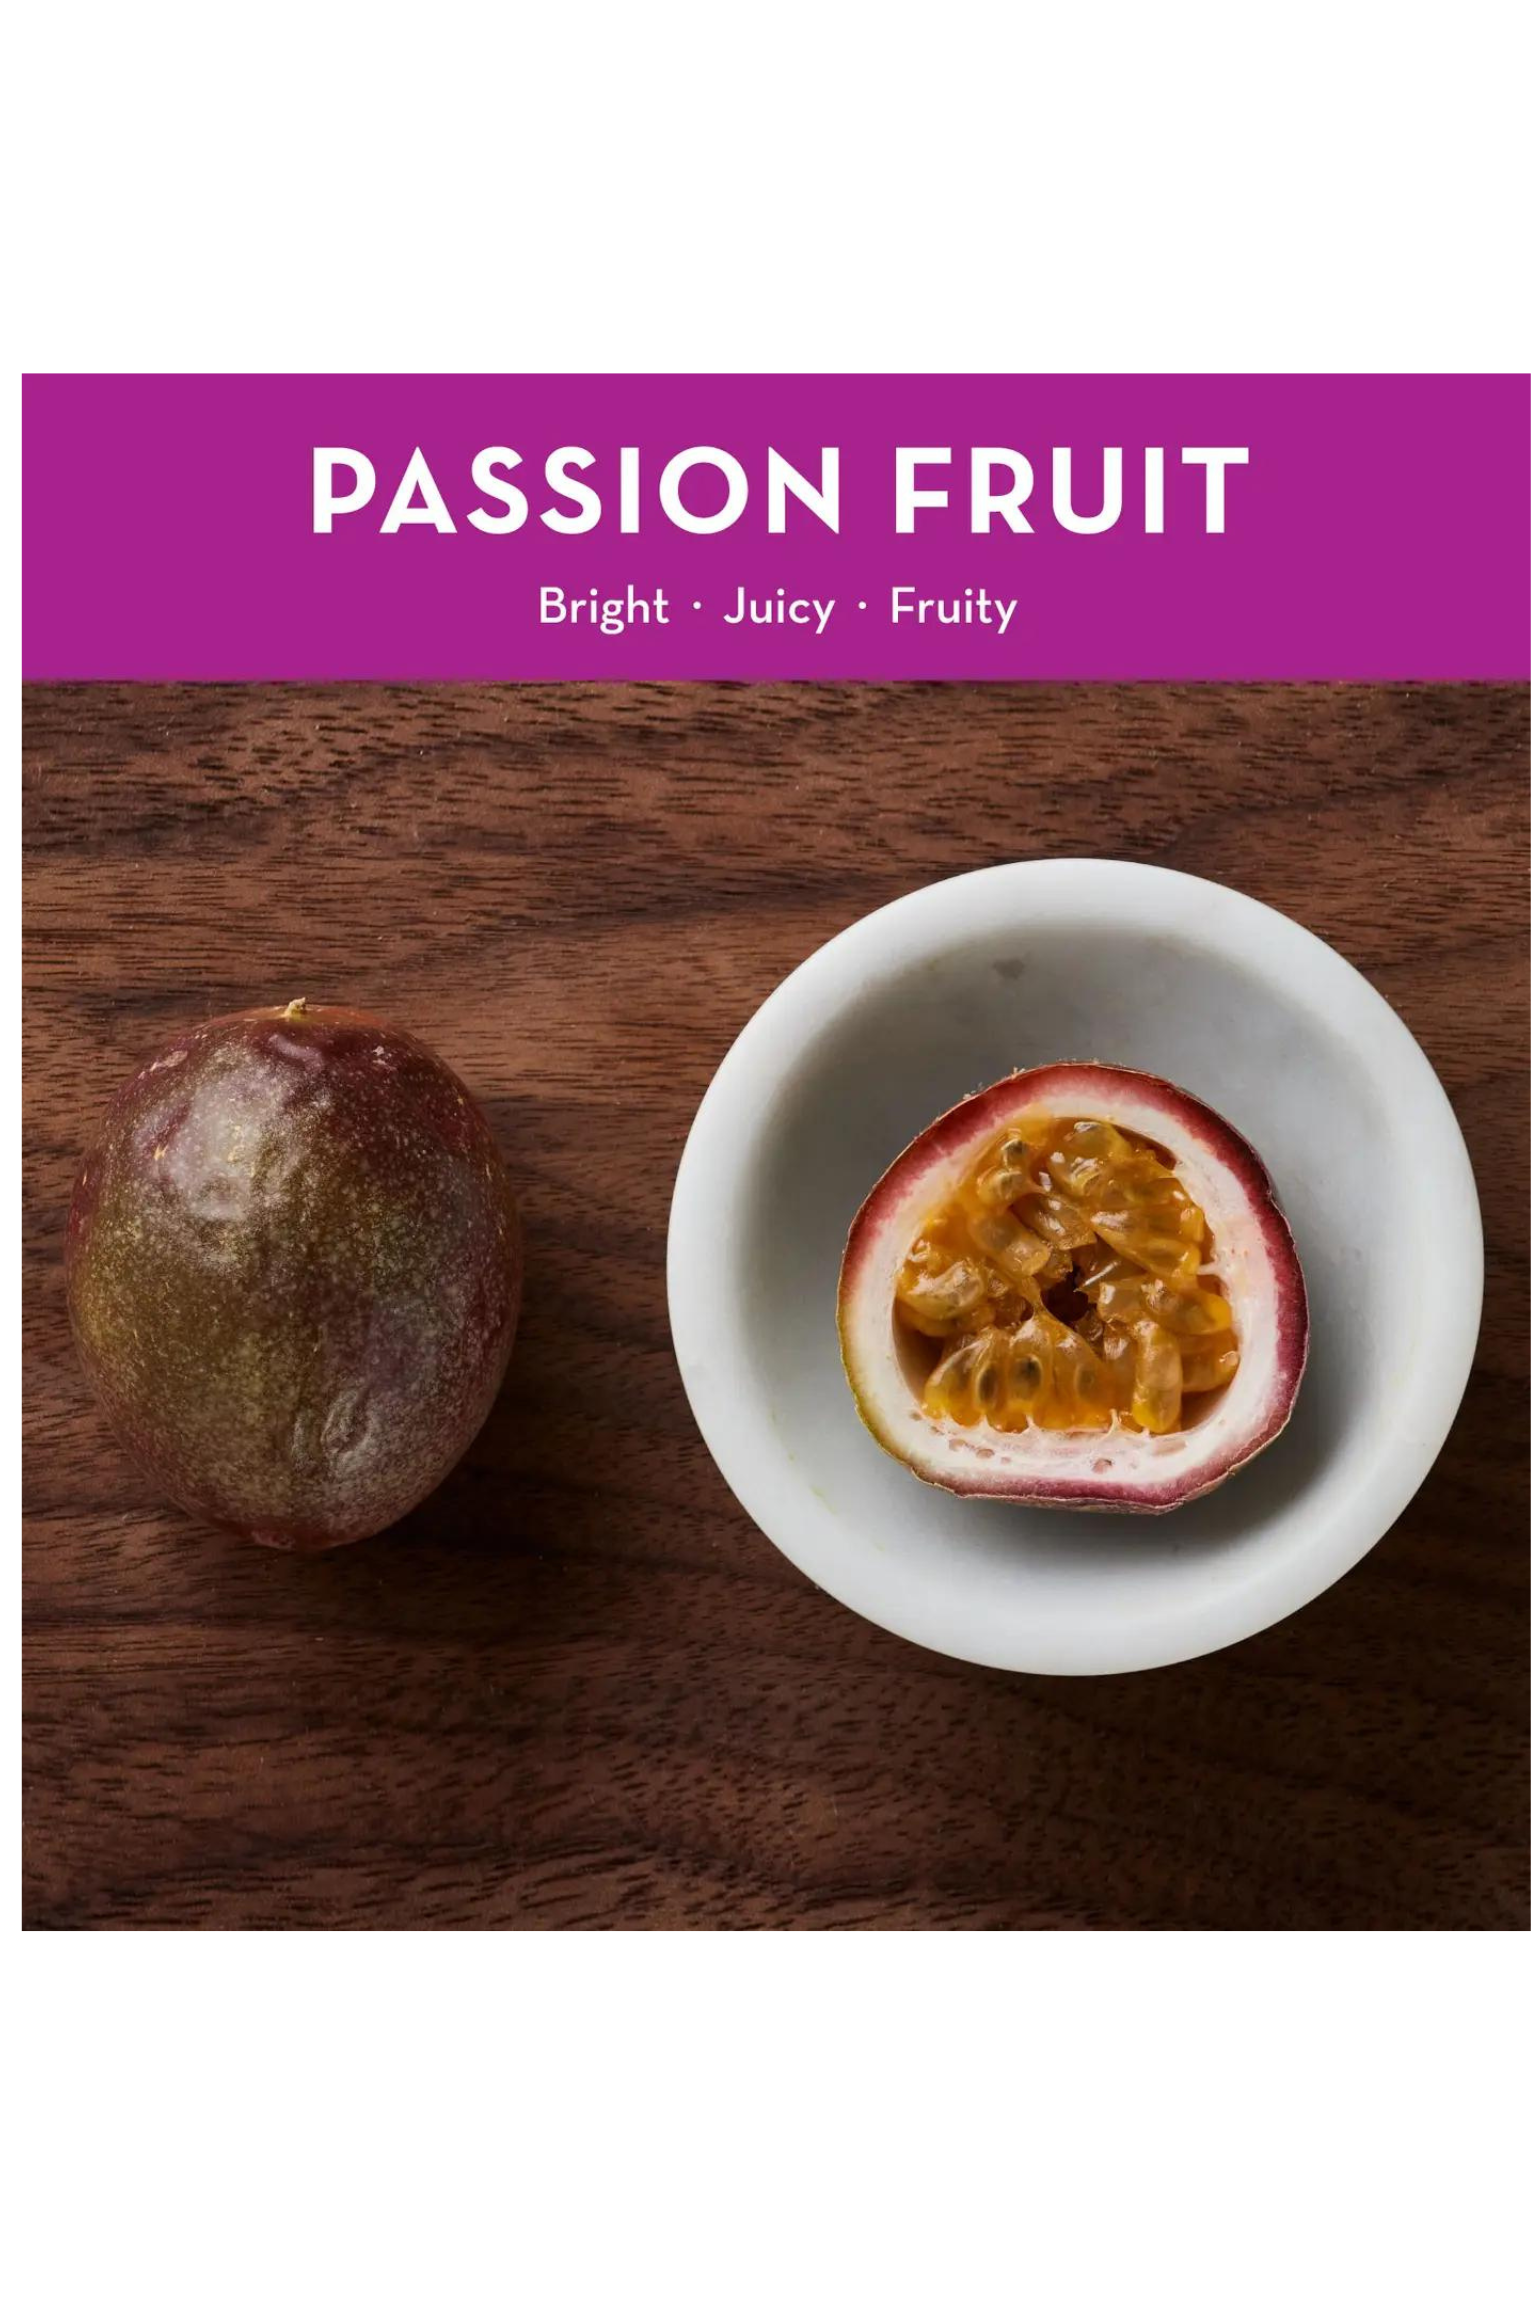 2oz Passion Fruit